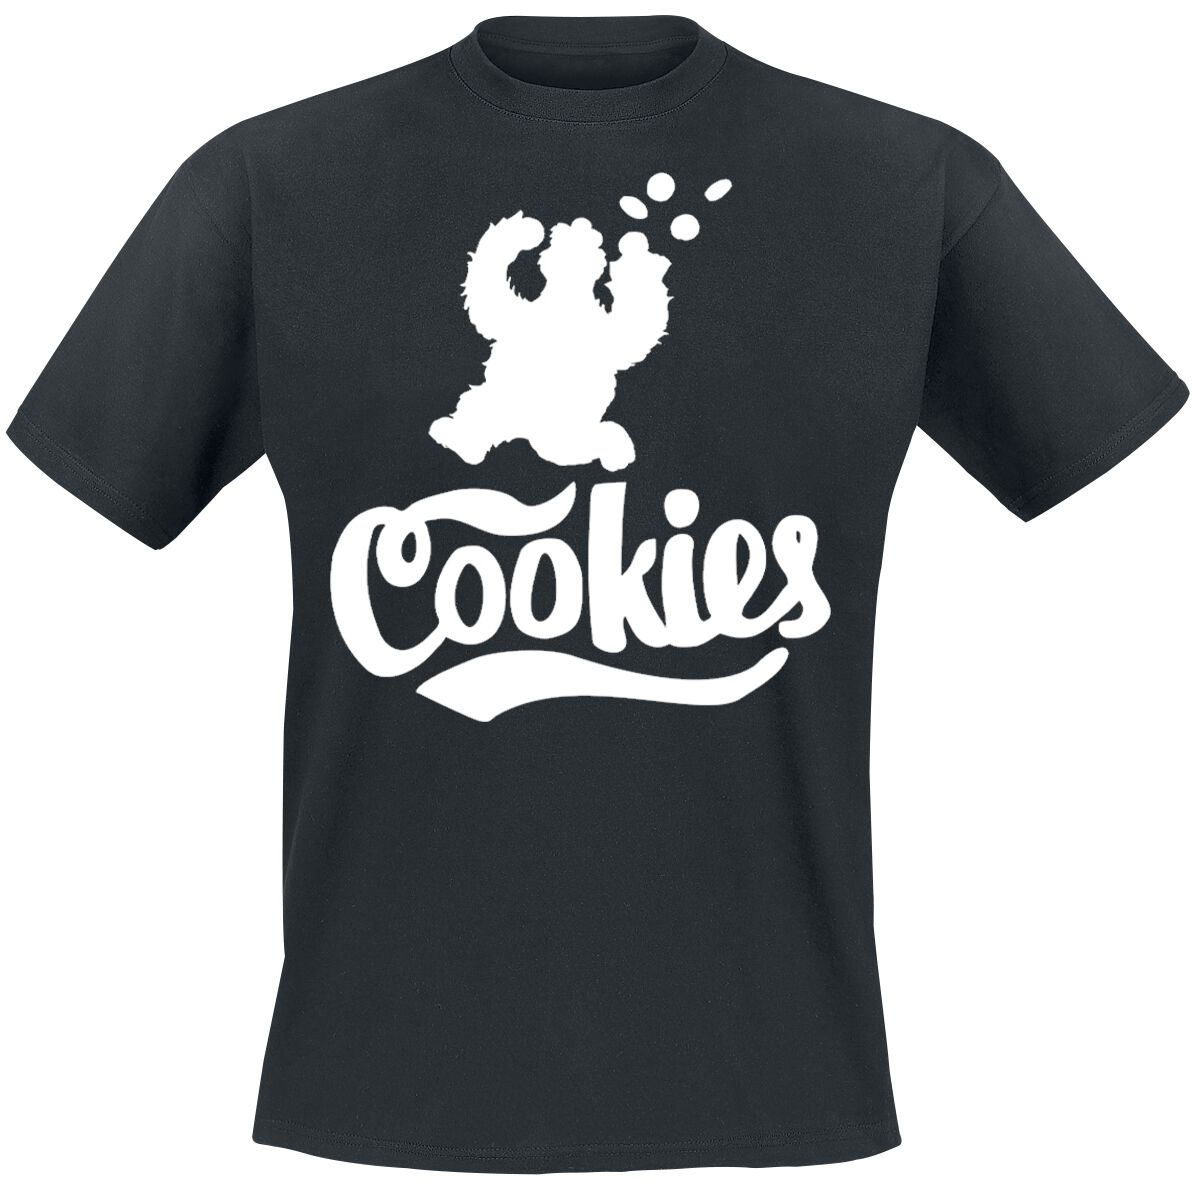 Sesame Street Cookie Monster - Cookies T-Shirt black